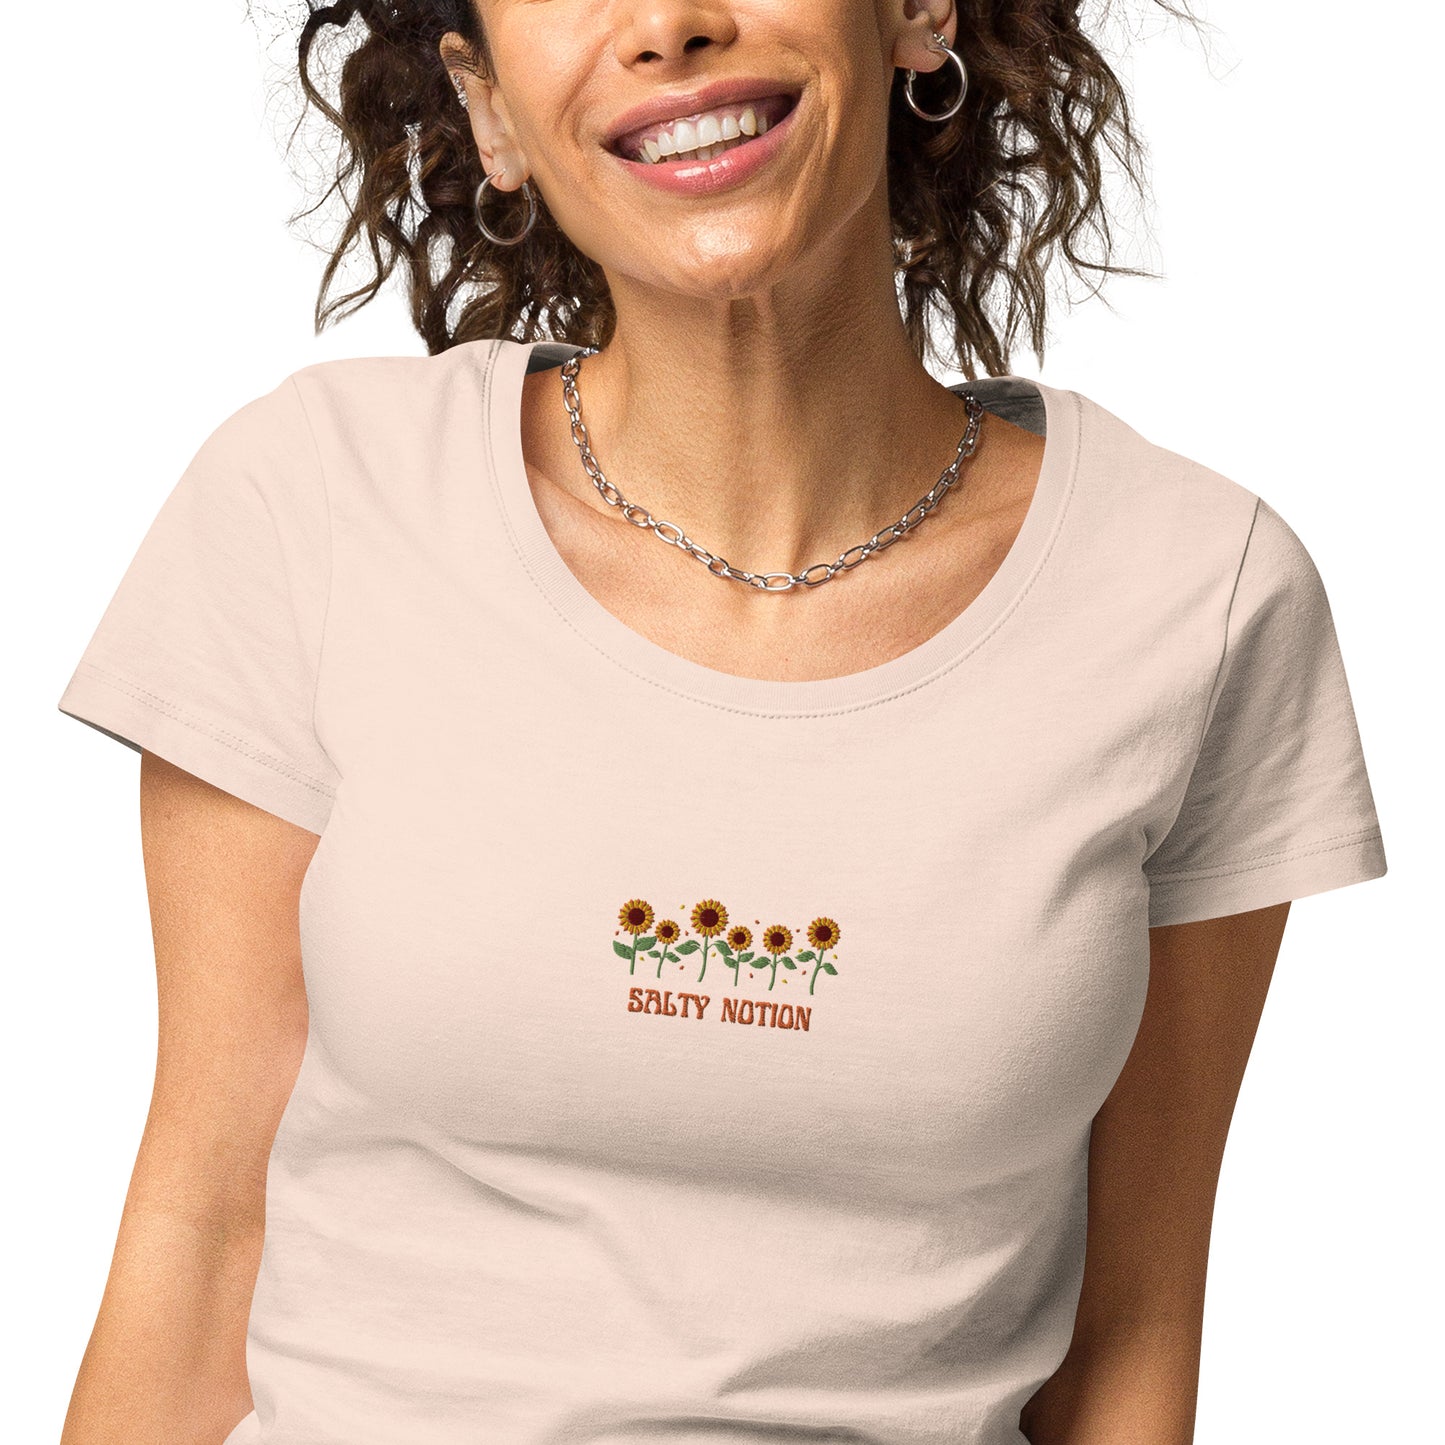 Women’s Basic Sunflowers Organic T-Shirt White/Creamy pink